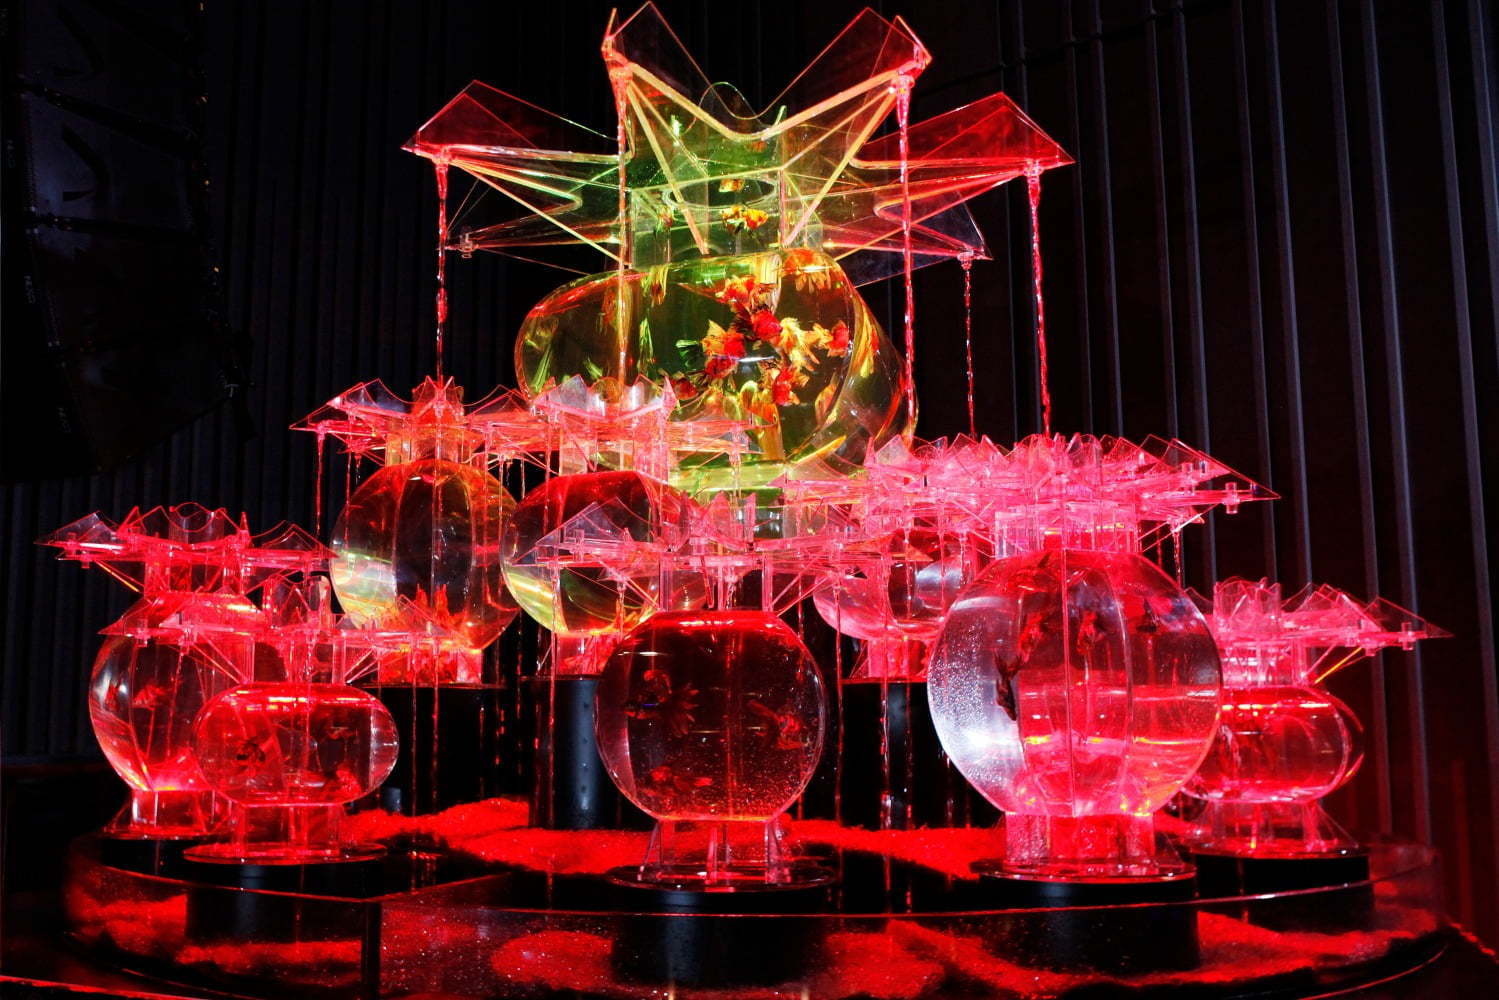 アートアクアリウム展 東京 大阪 金沢21世紀美術館で開催 8 000匹の金魚が舞う水中アート ファッションプレス